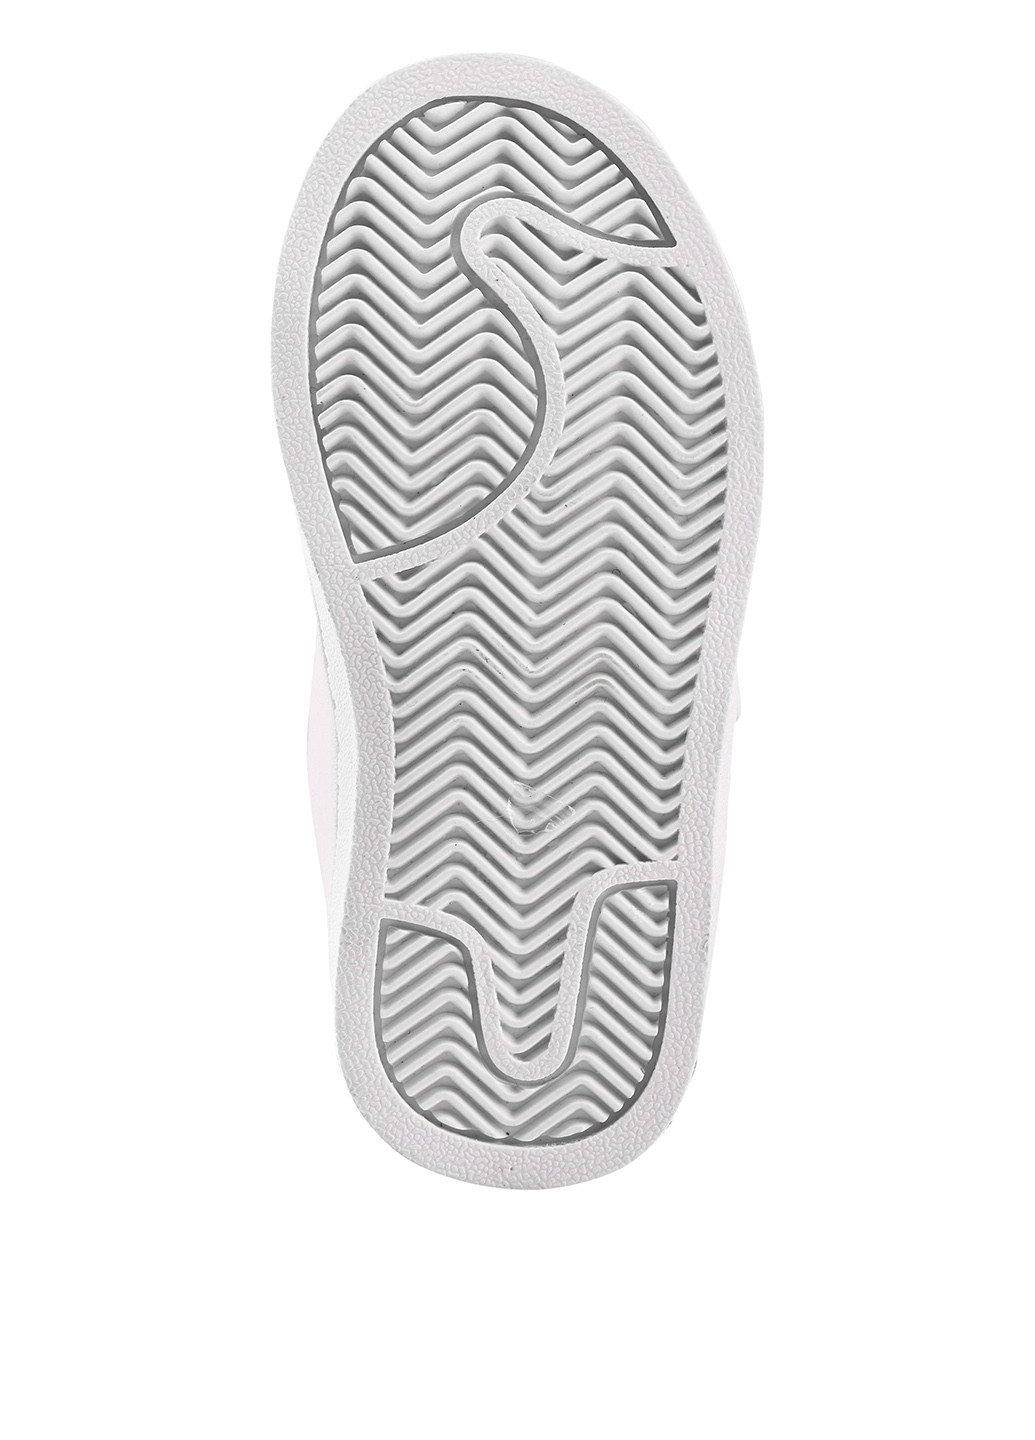 Белые демисезонные кроссовки Reima